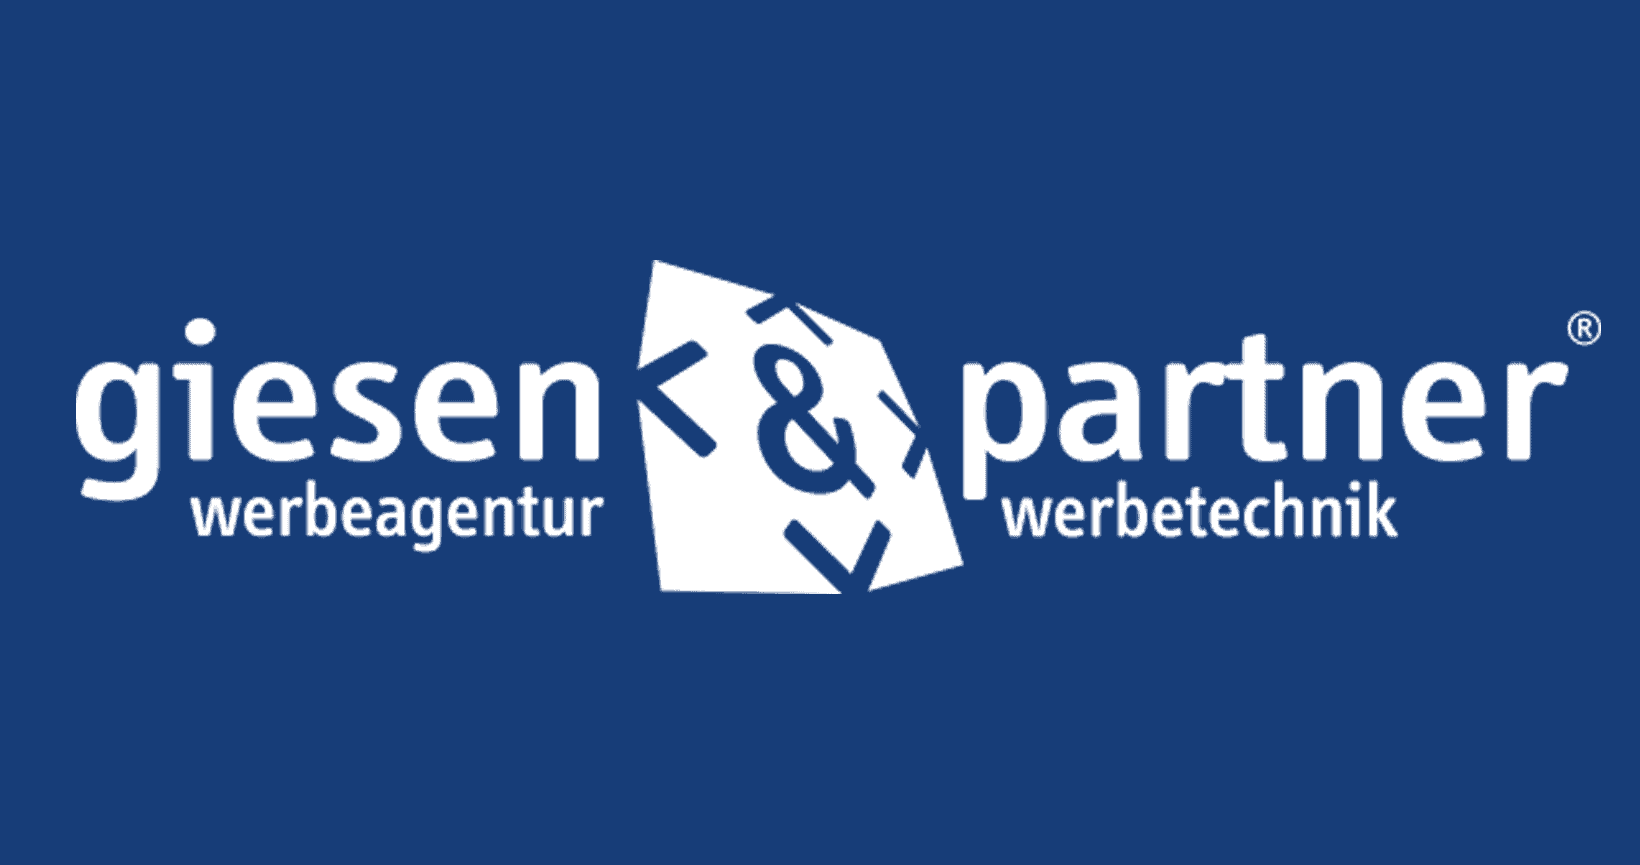 (c) Giesen-partner.com